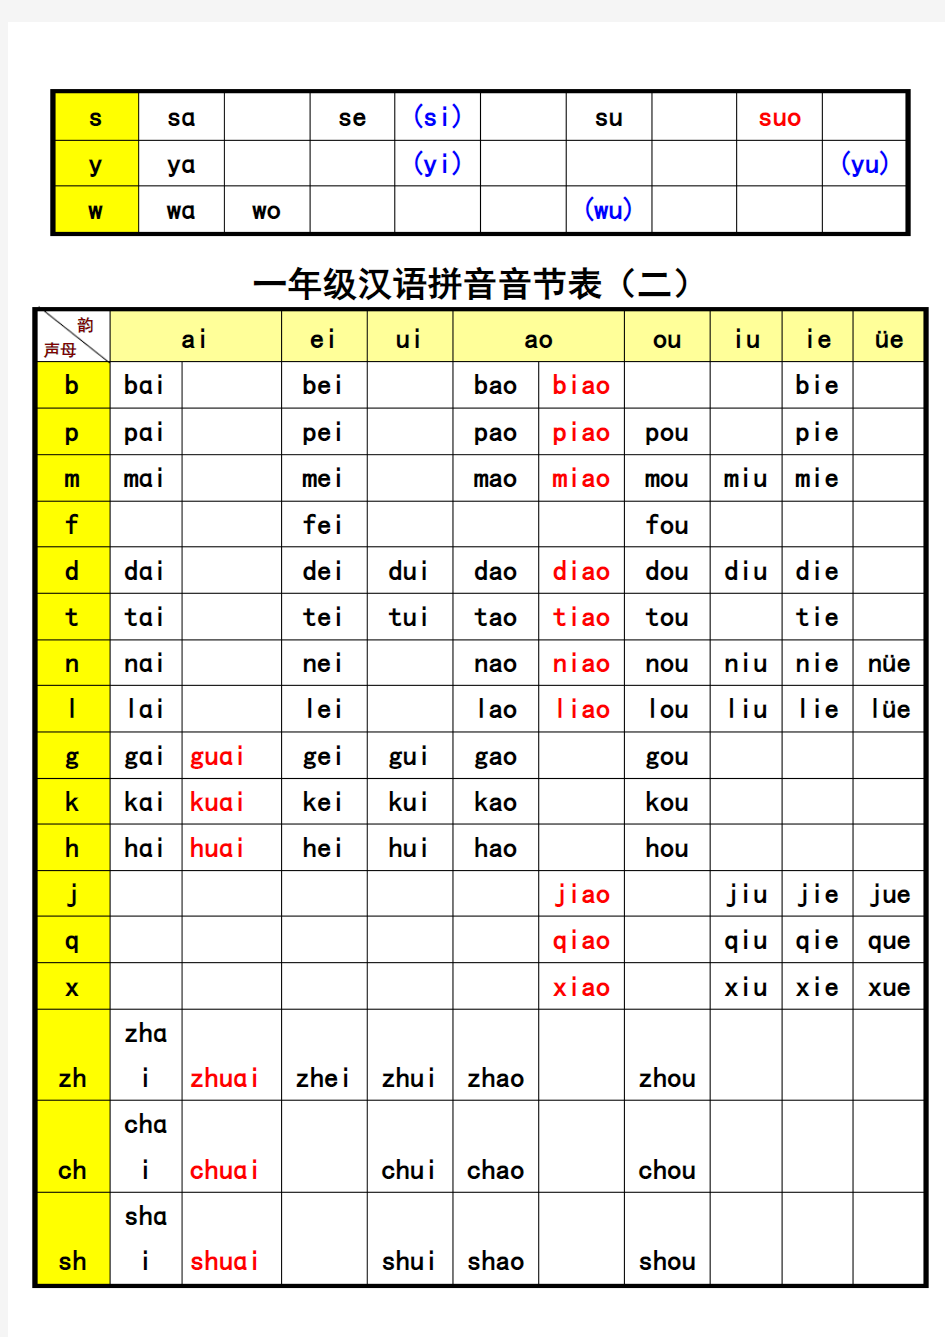 一年级汉语拼音音节表完整版